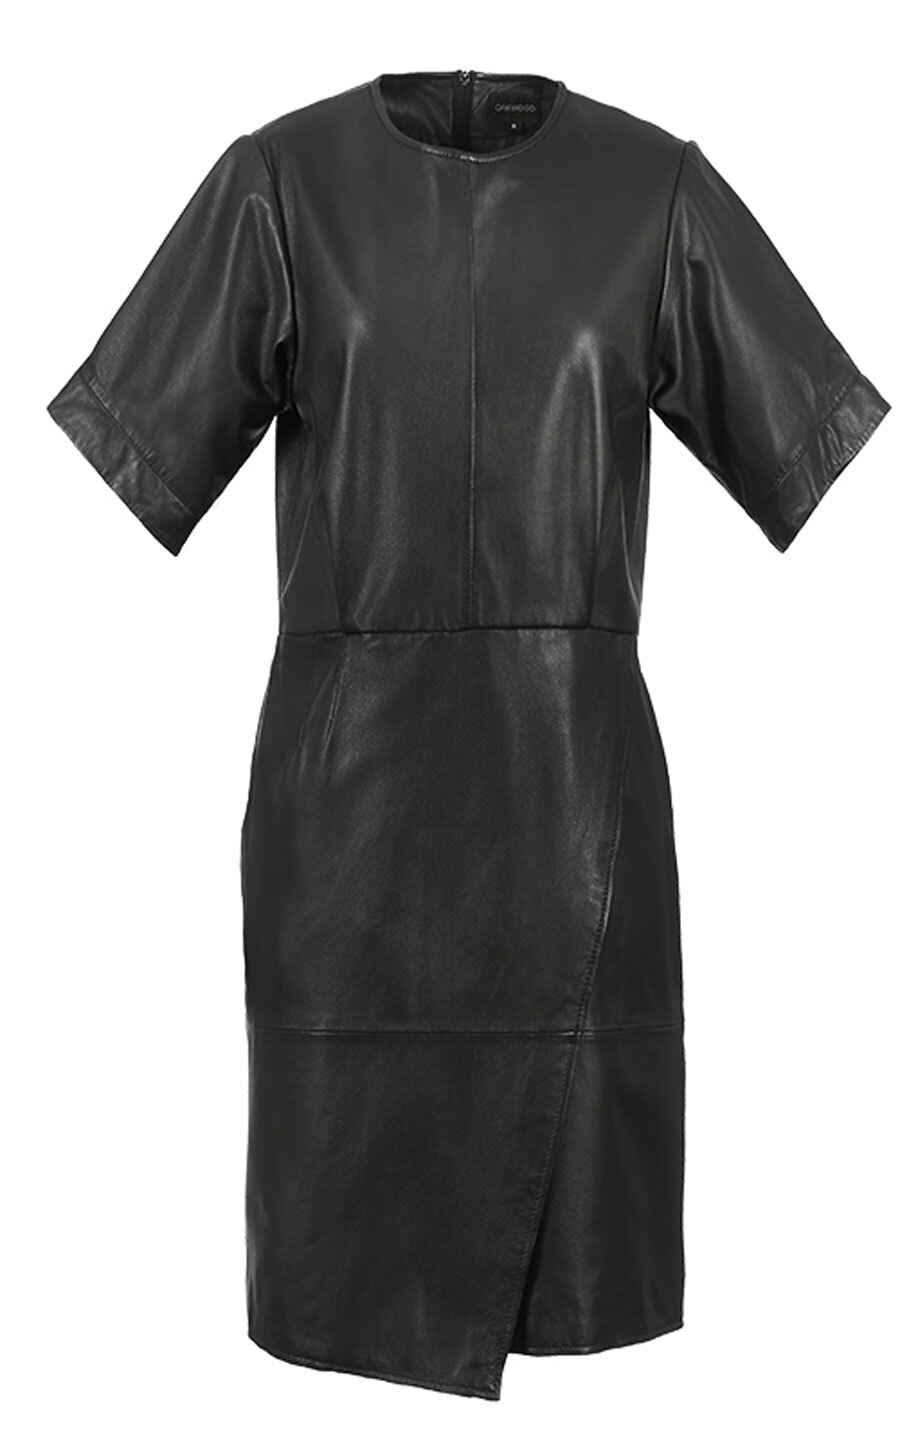 Vêtement en cuir Robes & jupes cuir noir